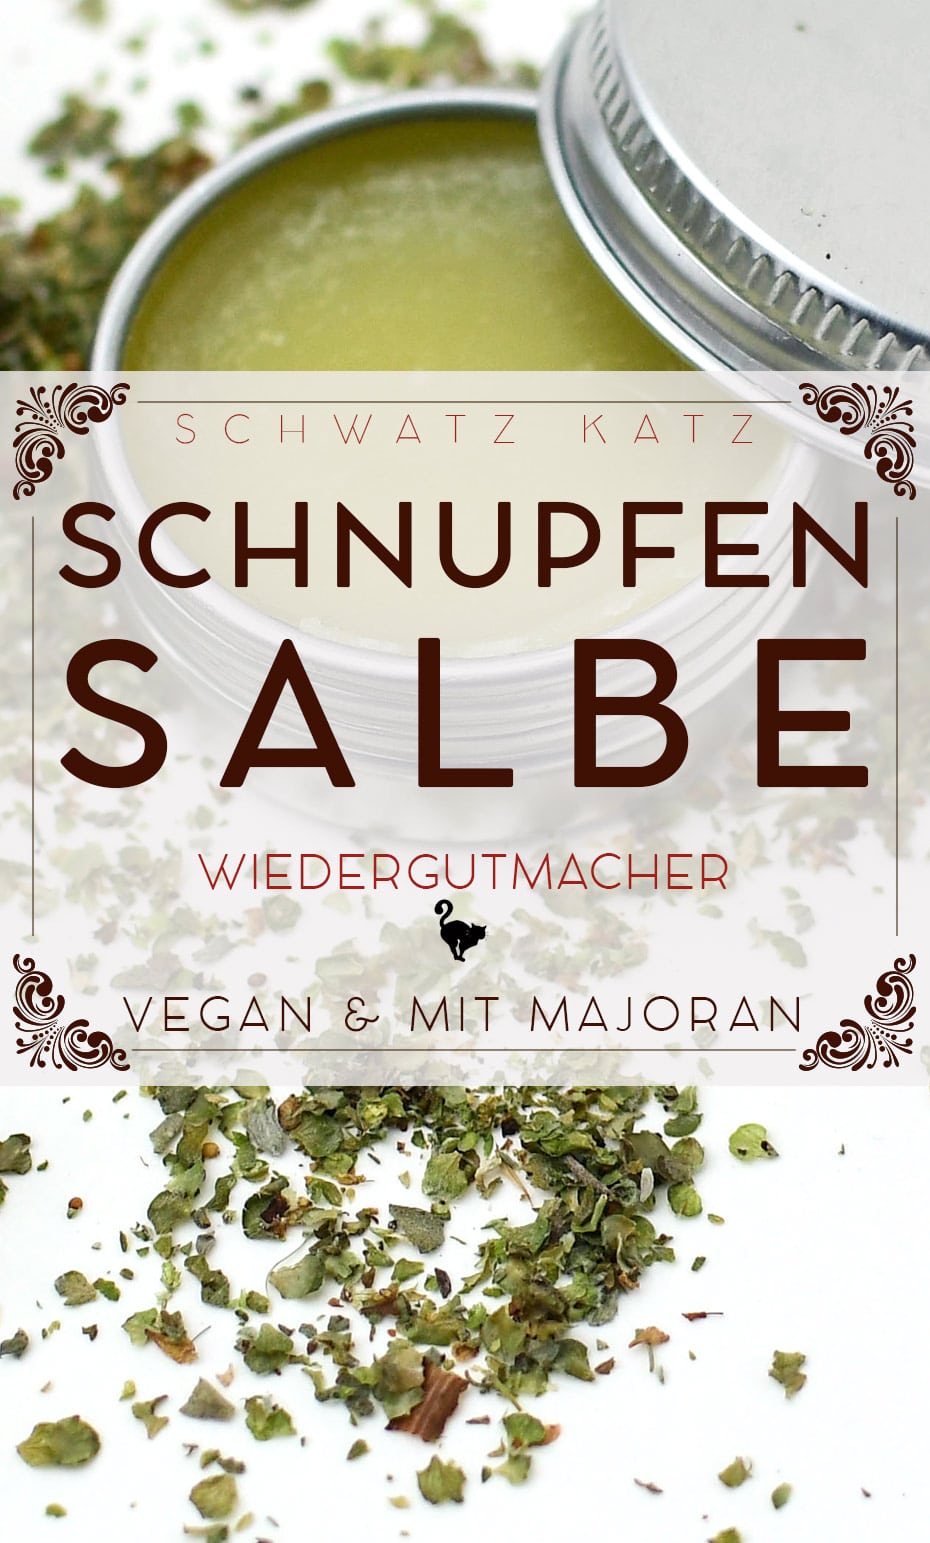 Majoran Schnupfensalbe im veganen Kleid | Schwatz Katz